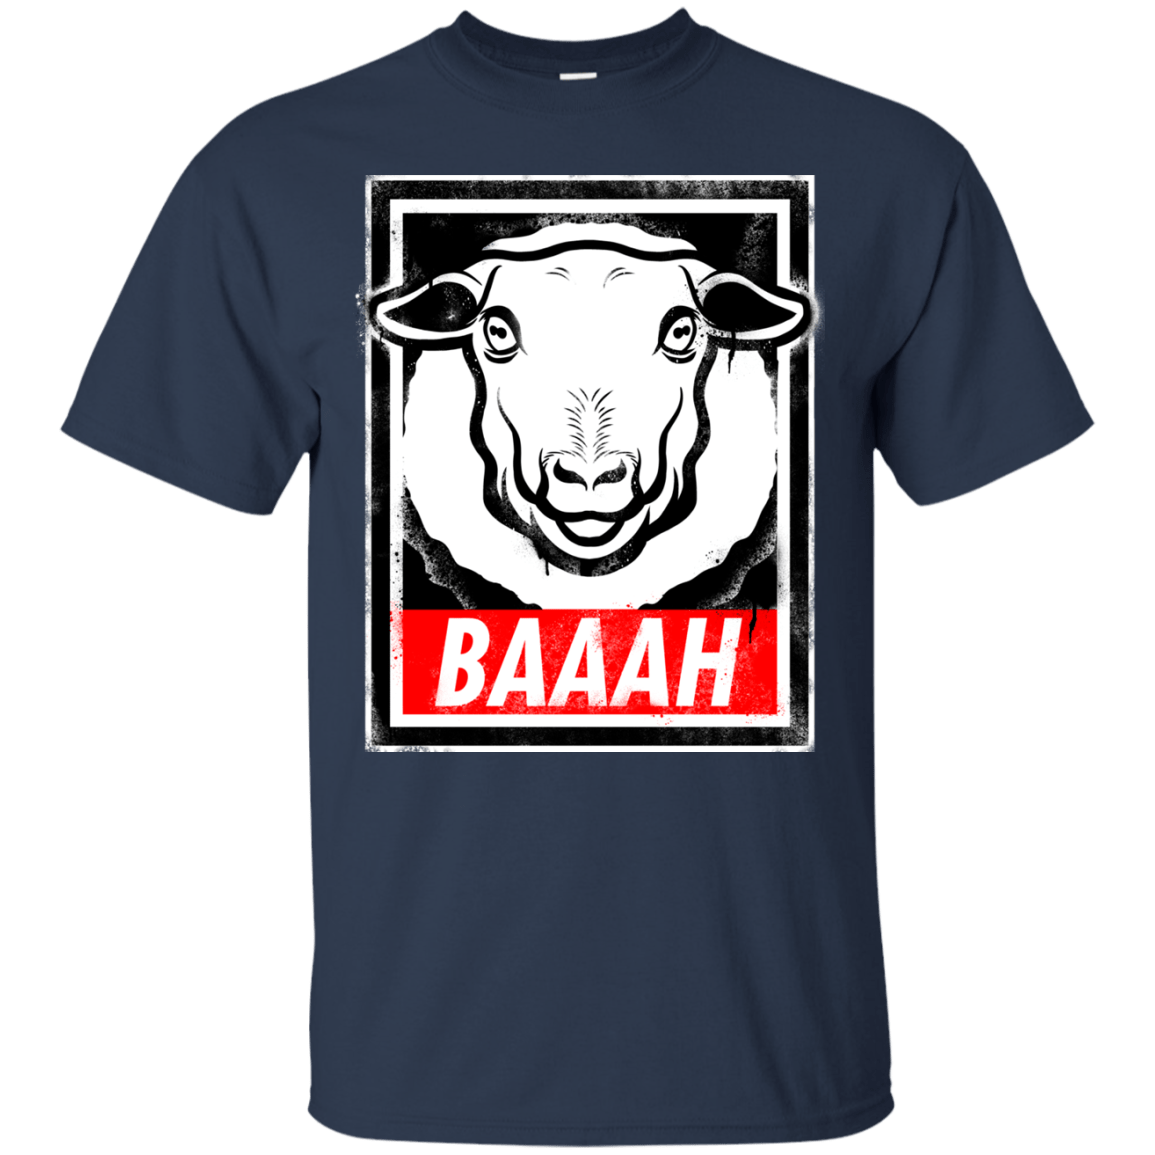 T-Shirts Navy / Small BAAAH T-Shirt